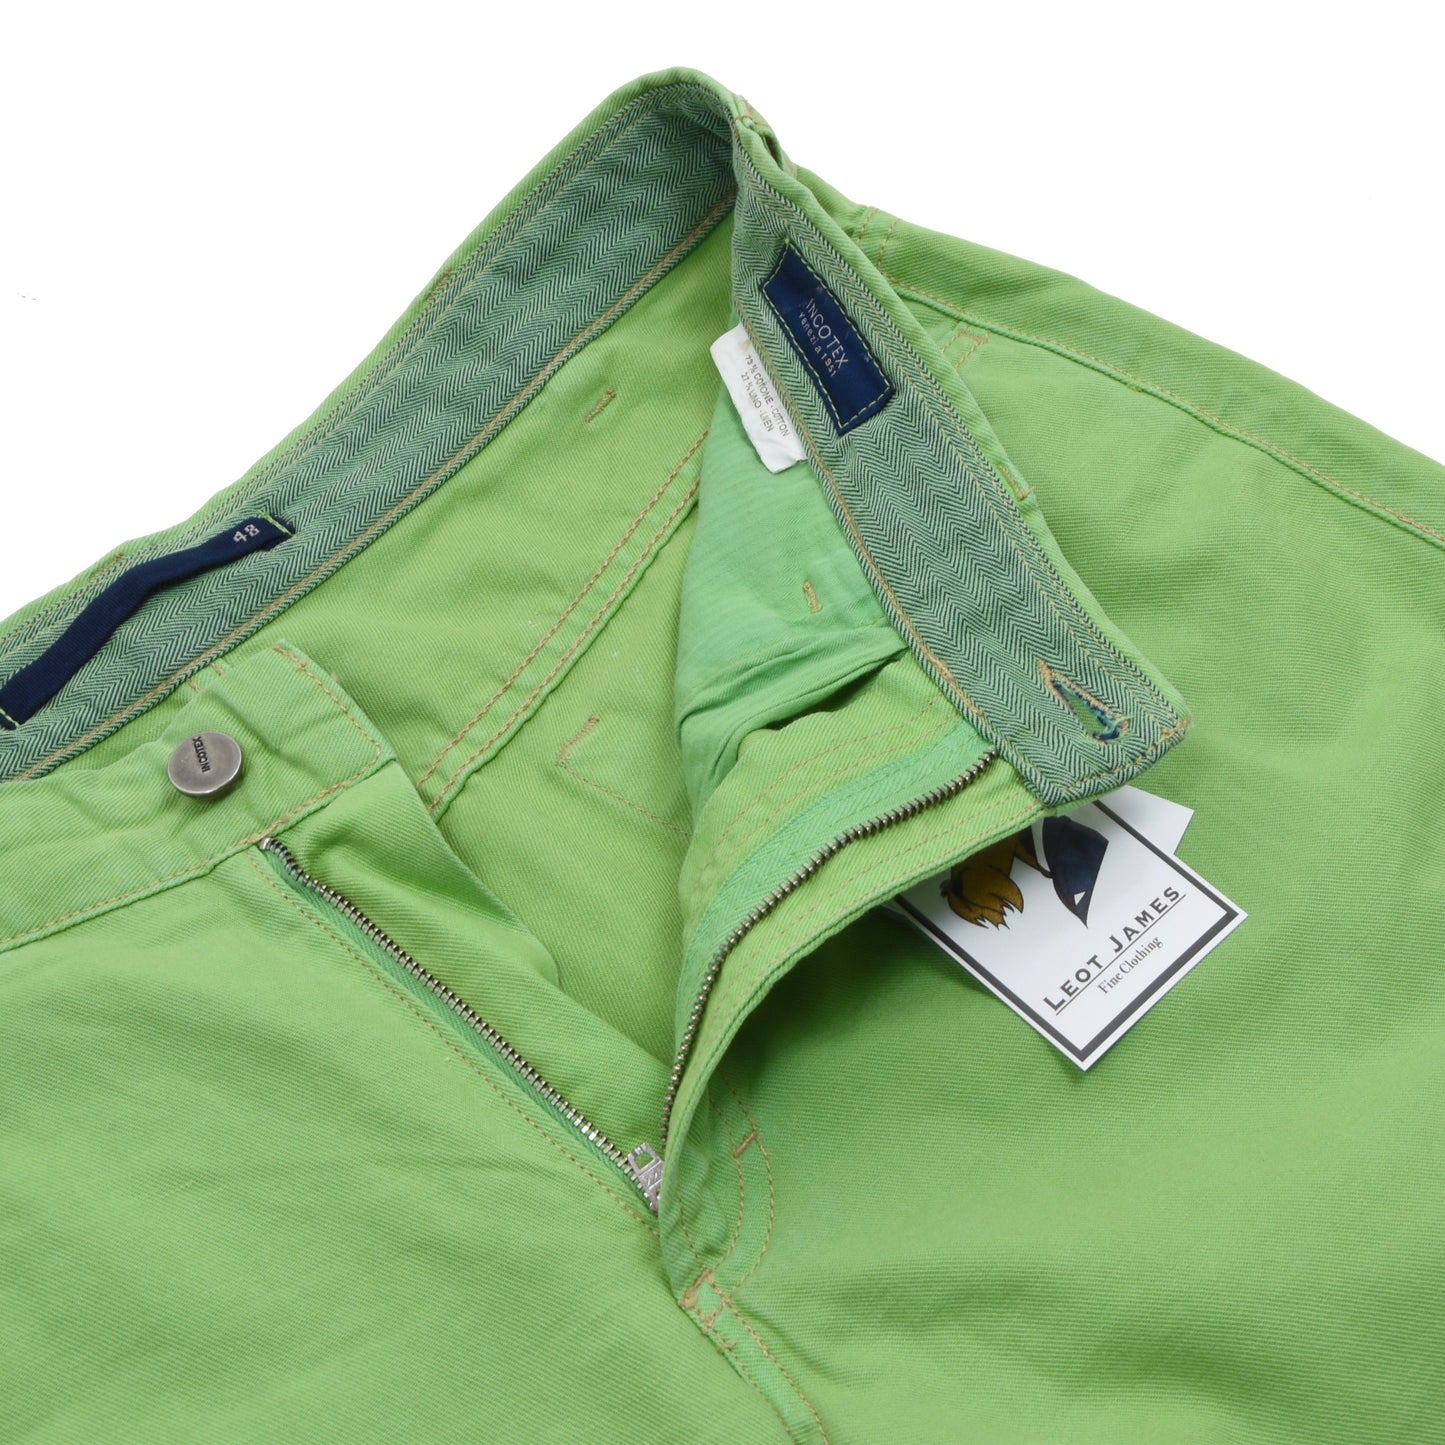 Incotex Leinen/Baumwolle Shorts Größe 48 - Grün